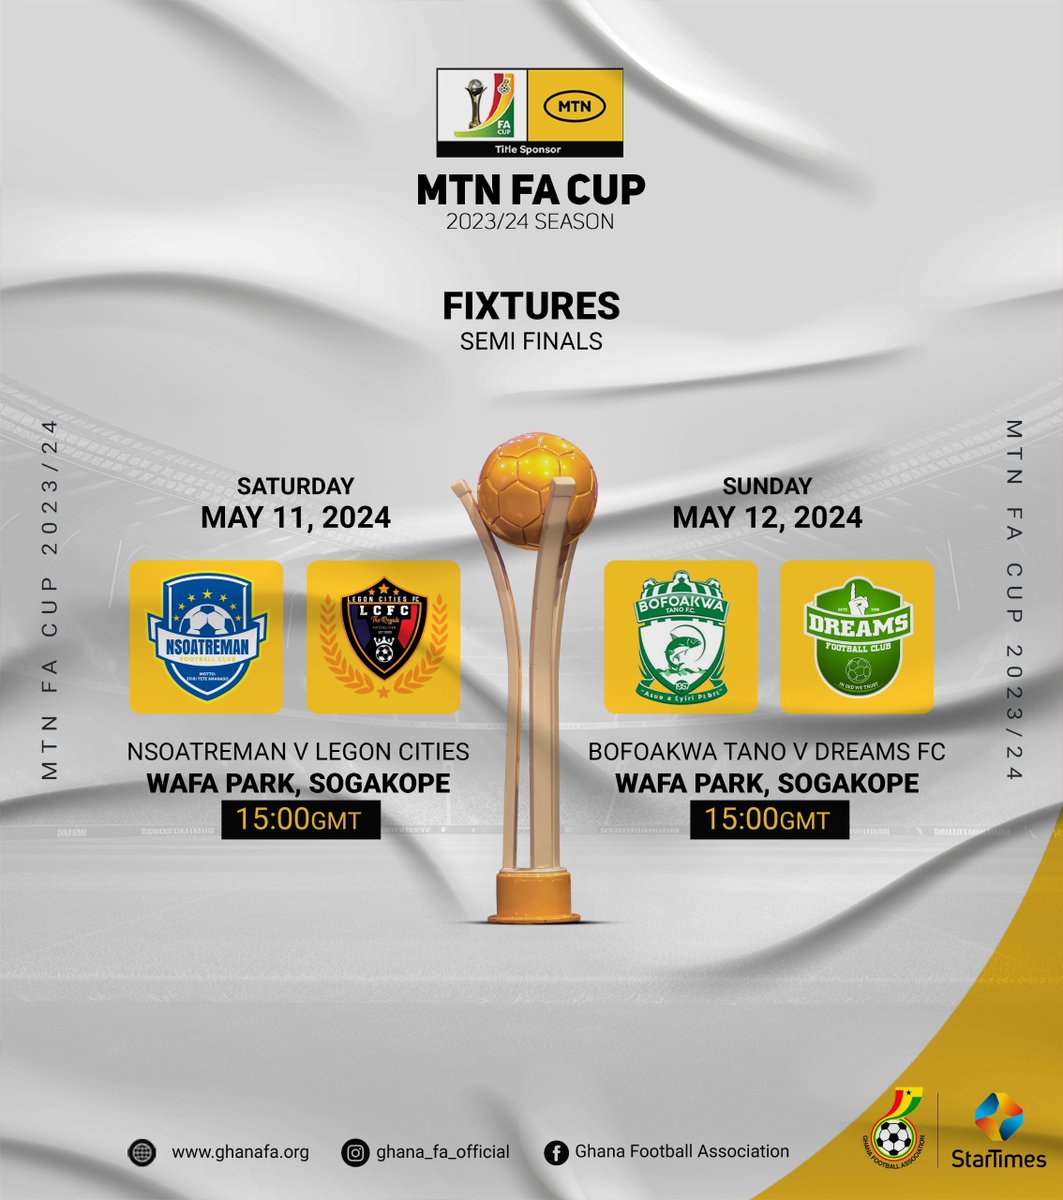 2023/23 MTN FA Cup semi-finals fixtures 👇

#MTNFACup #MaxTV #MaxOnline